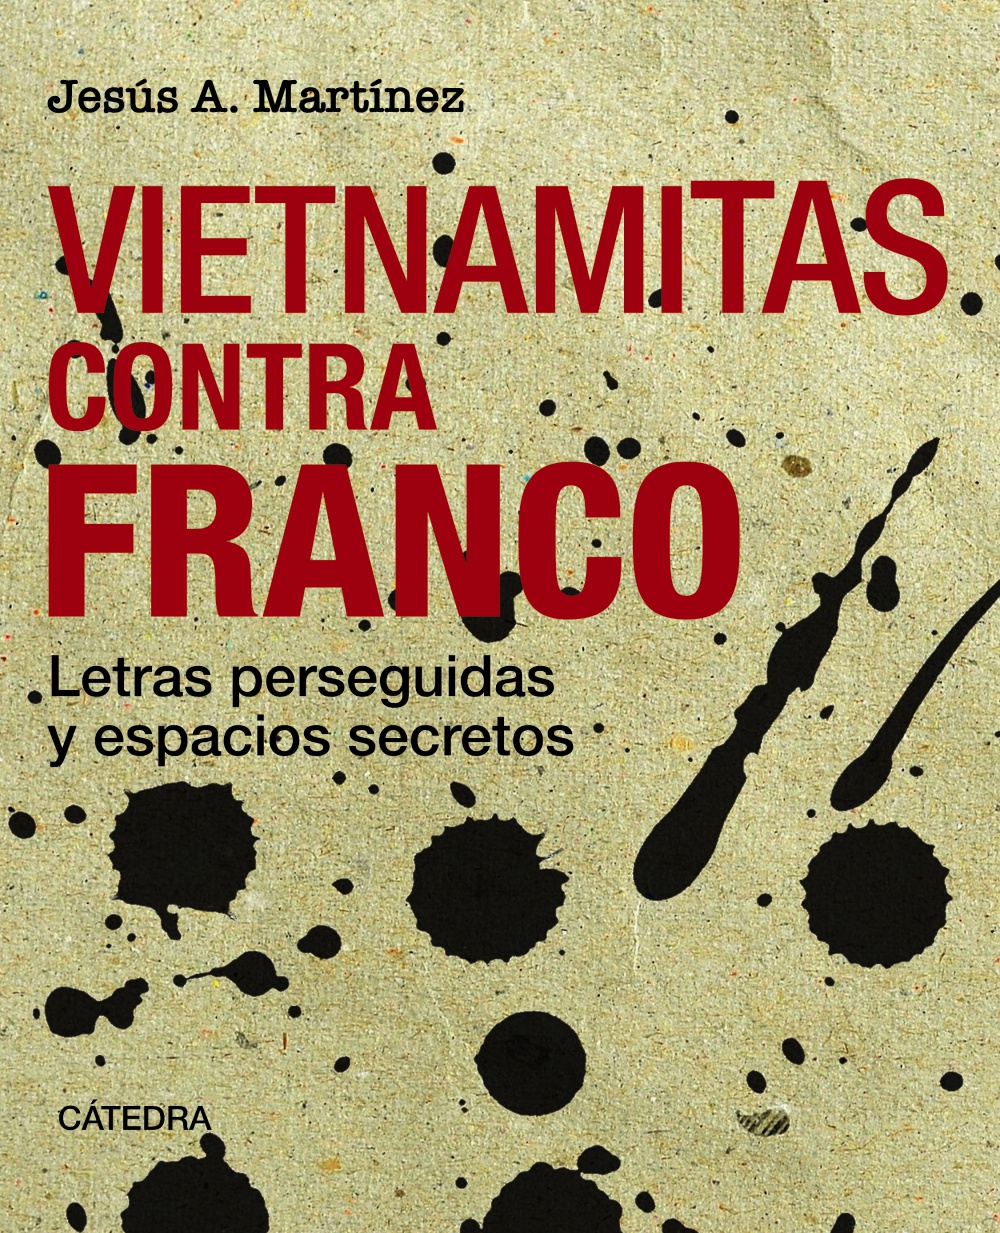 Ediciones Cátedra publica Vietnamitas contra Franco